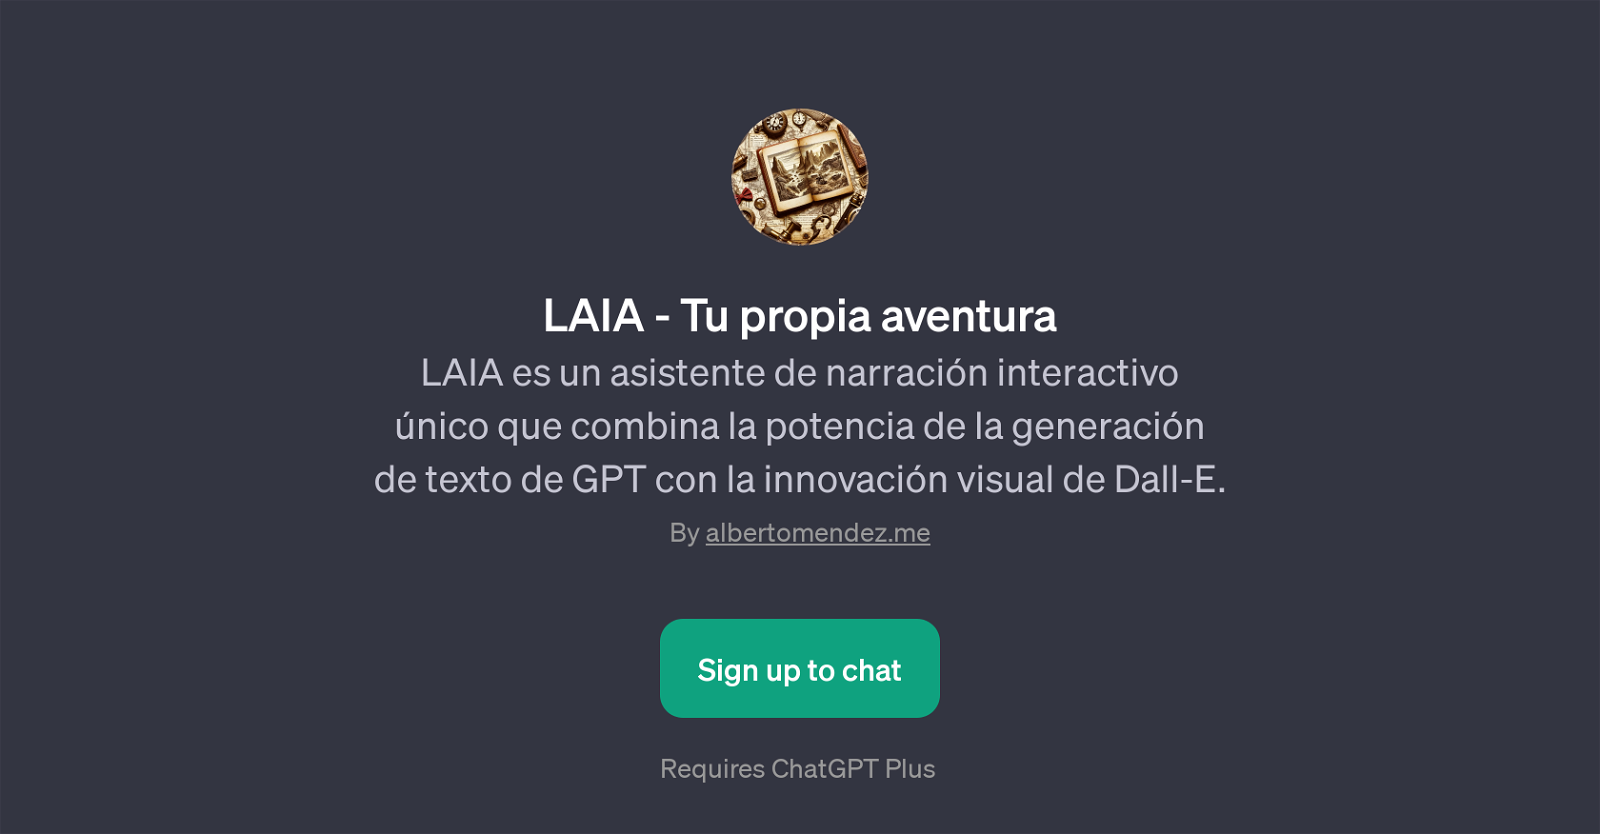 LAIA website